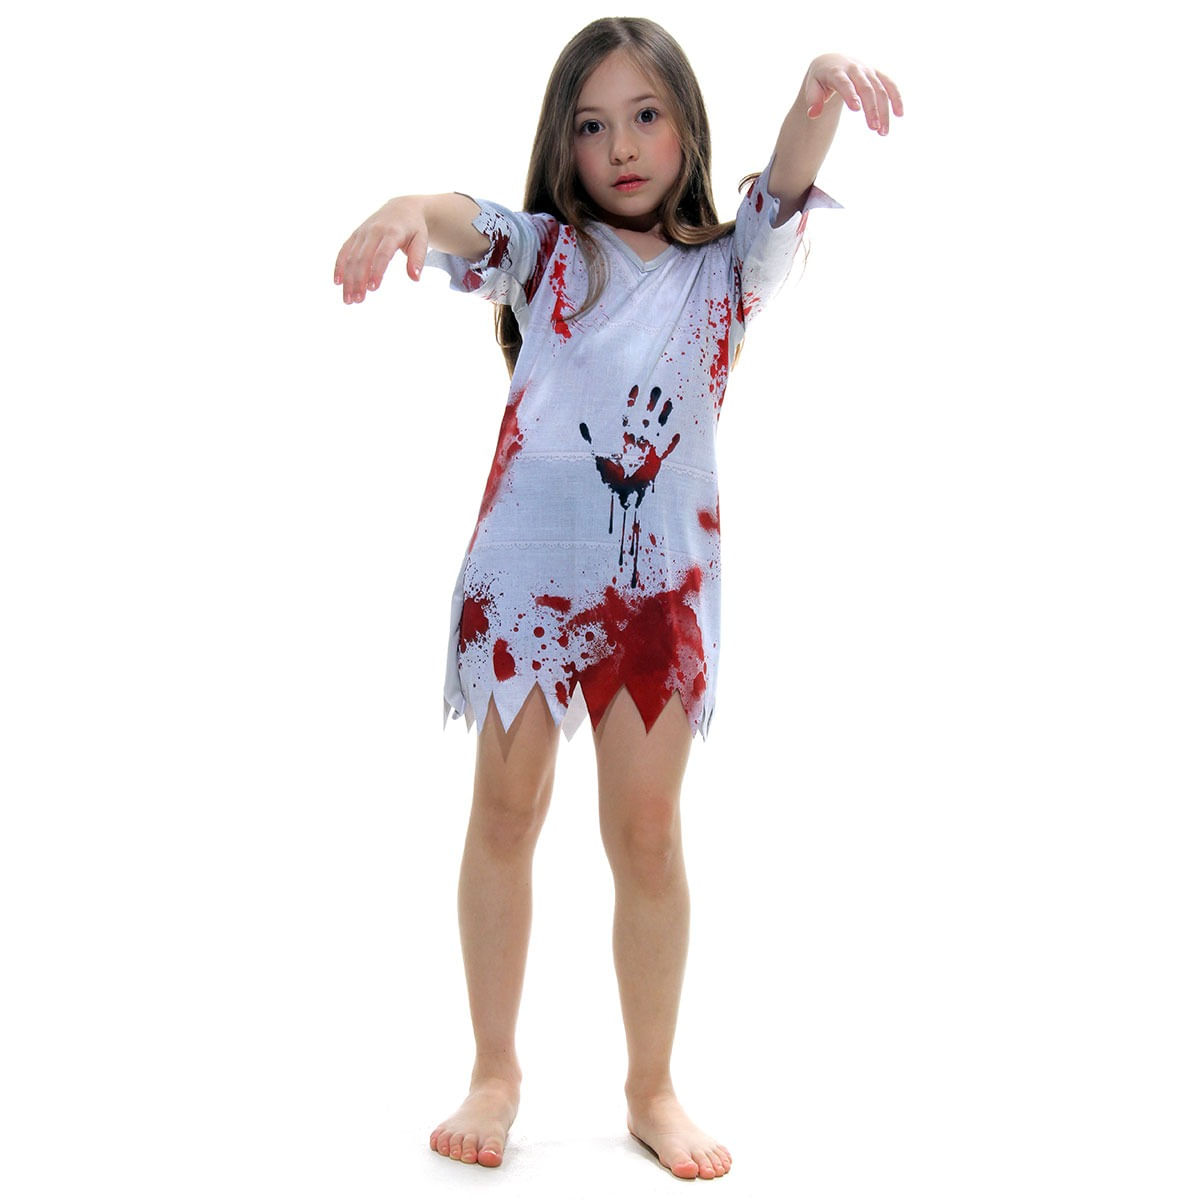 Fantasia Vestido Enfermeira Zumbi Menina Halloween Infantil